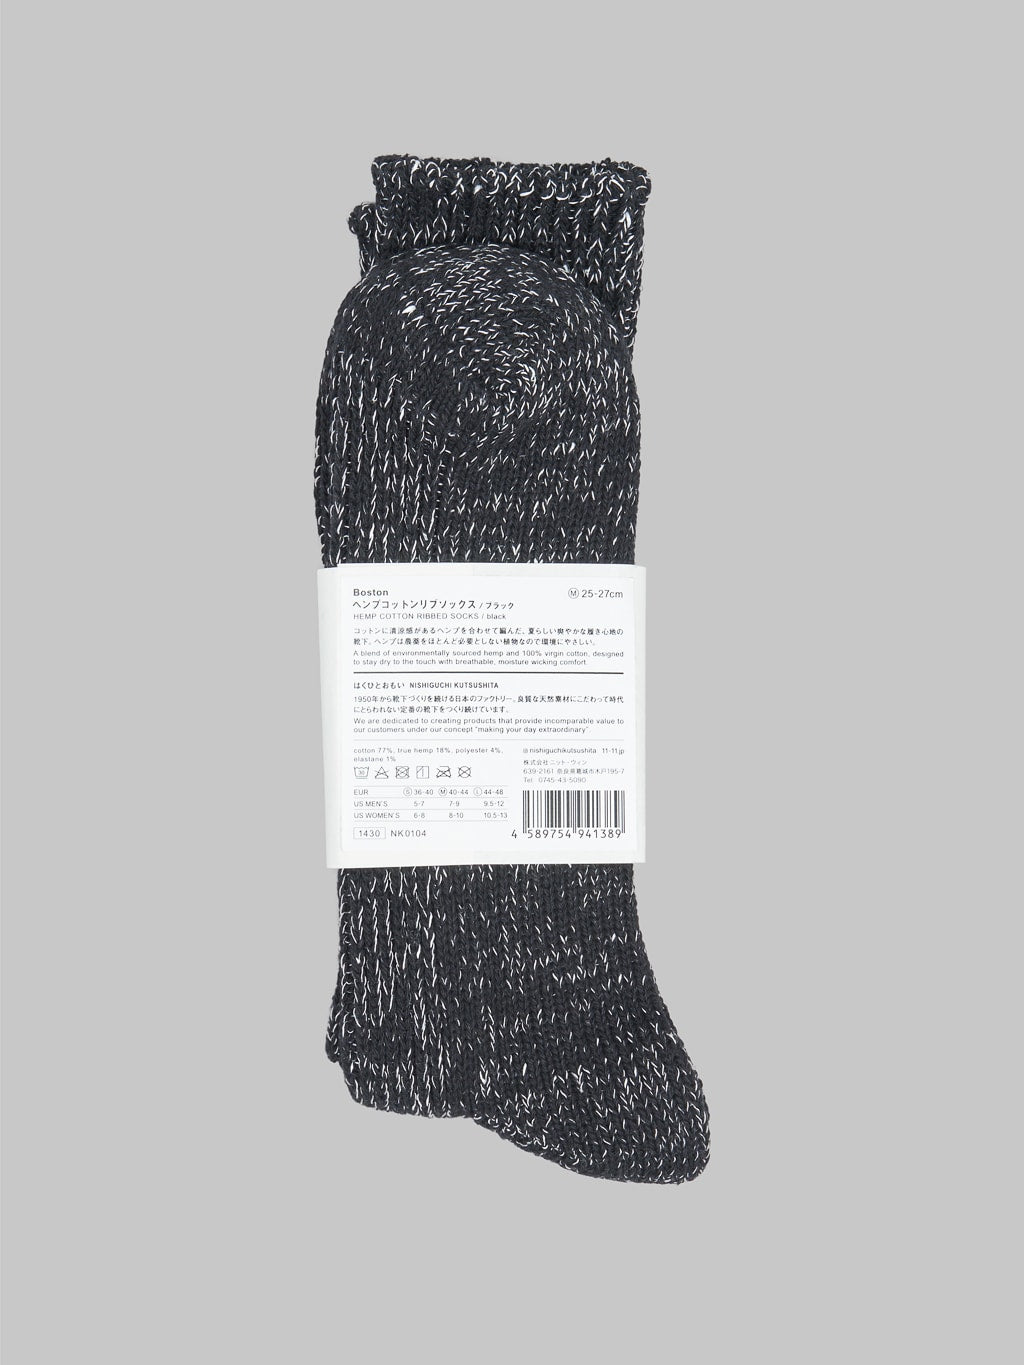 Nishiguchi Kutsushita Hemp Cotton Socks Black Detail Composition